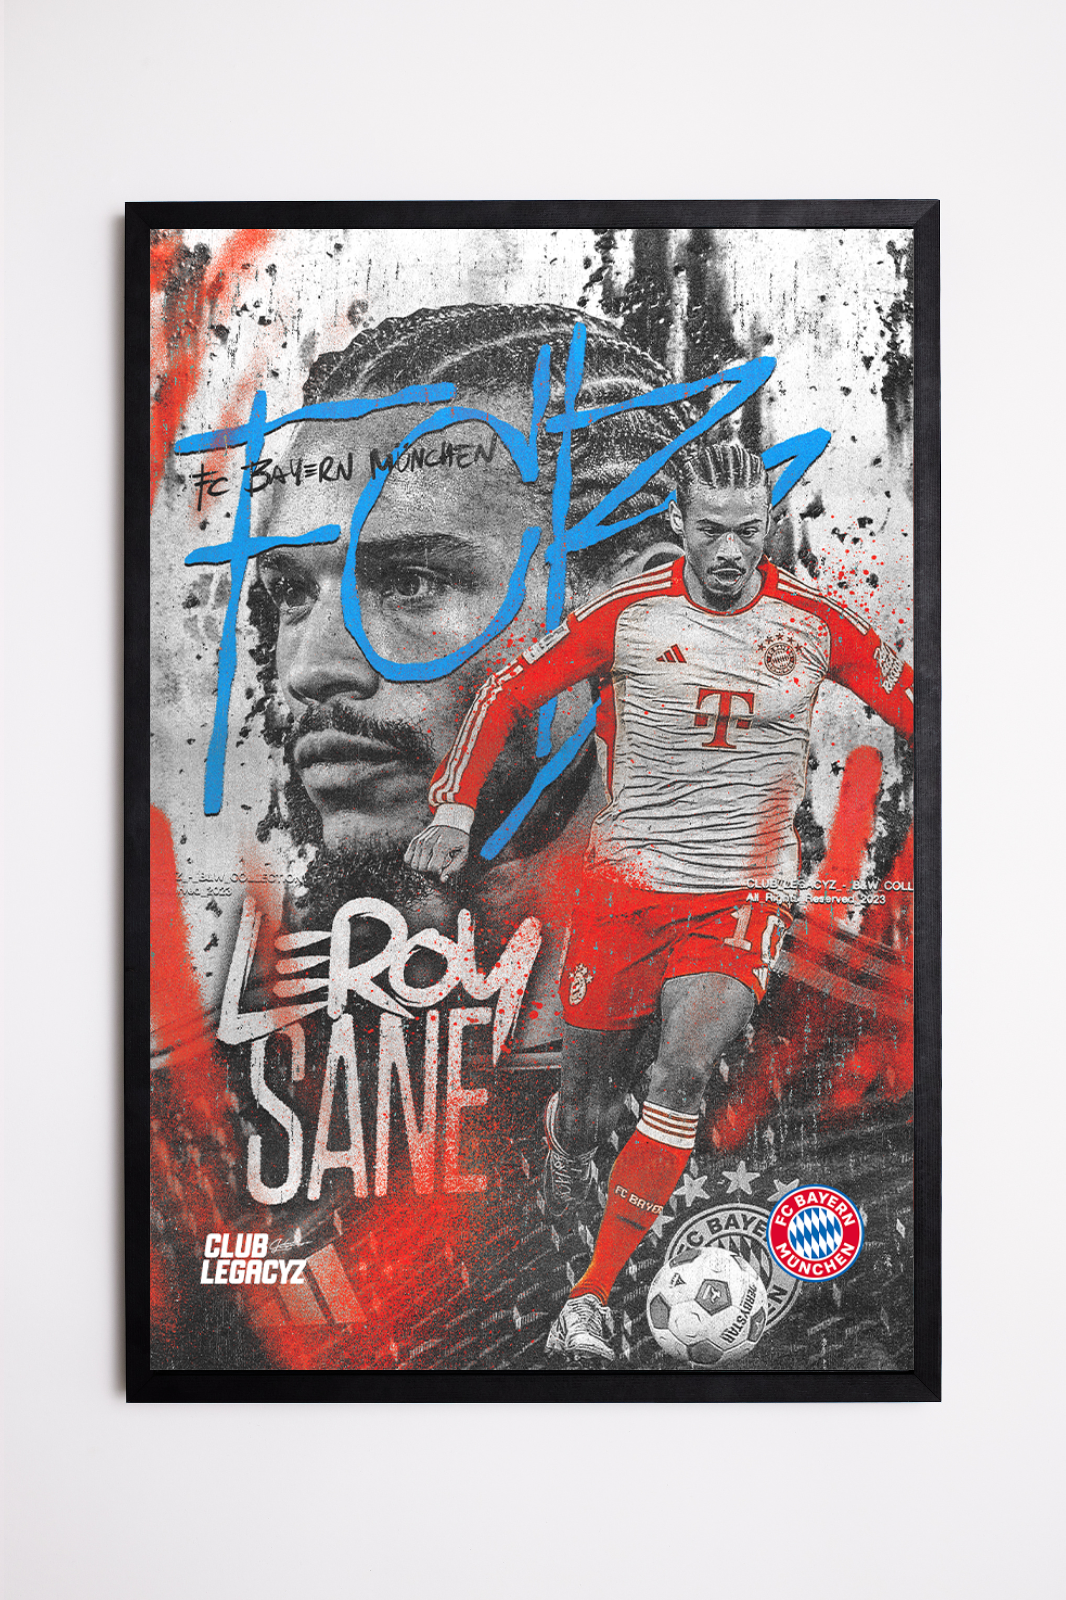 FC Bayern München - Leroy Sané Black & White Poster limited to 100